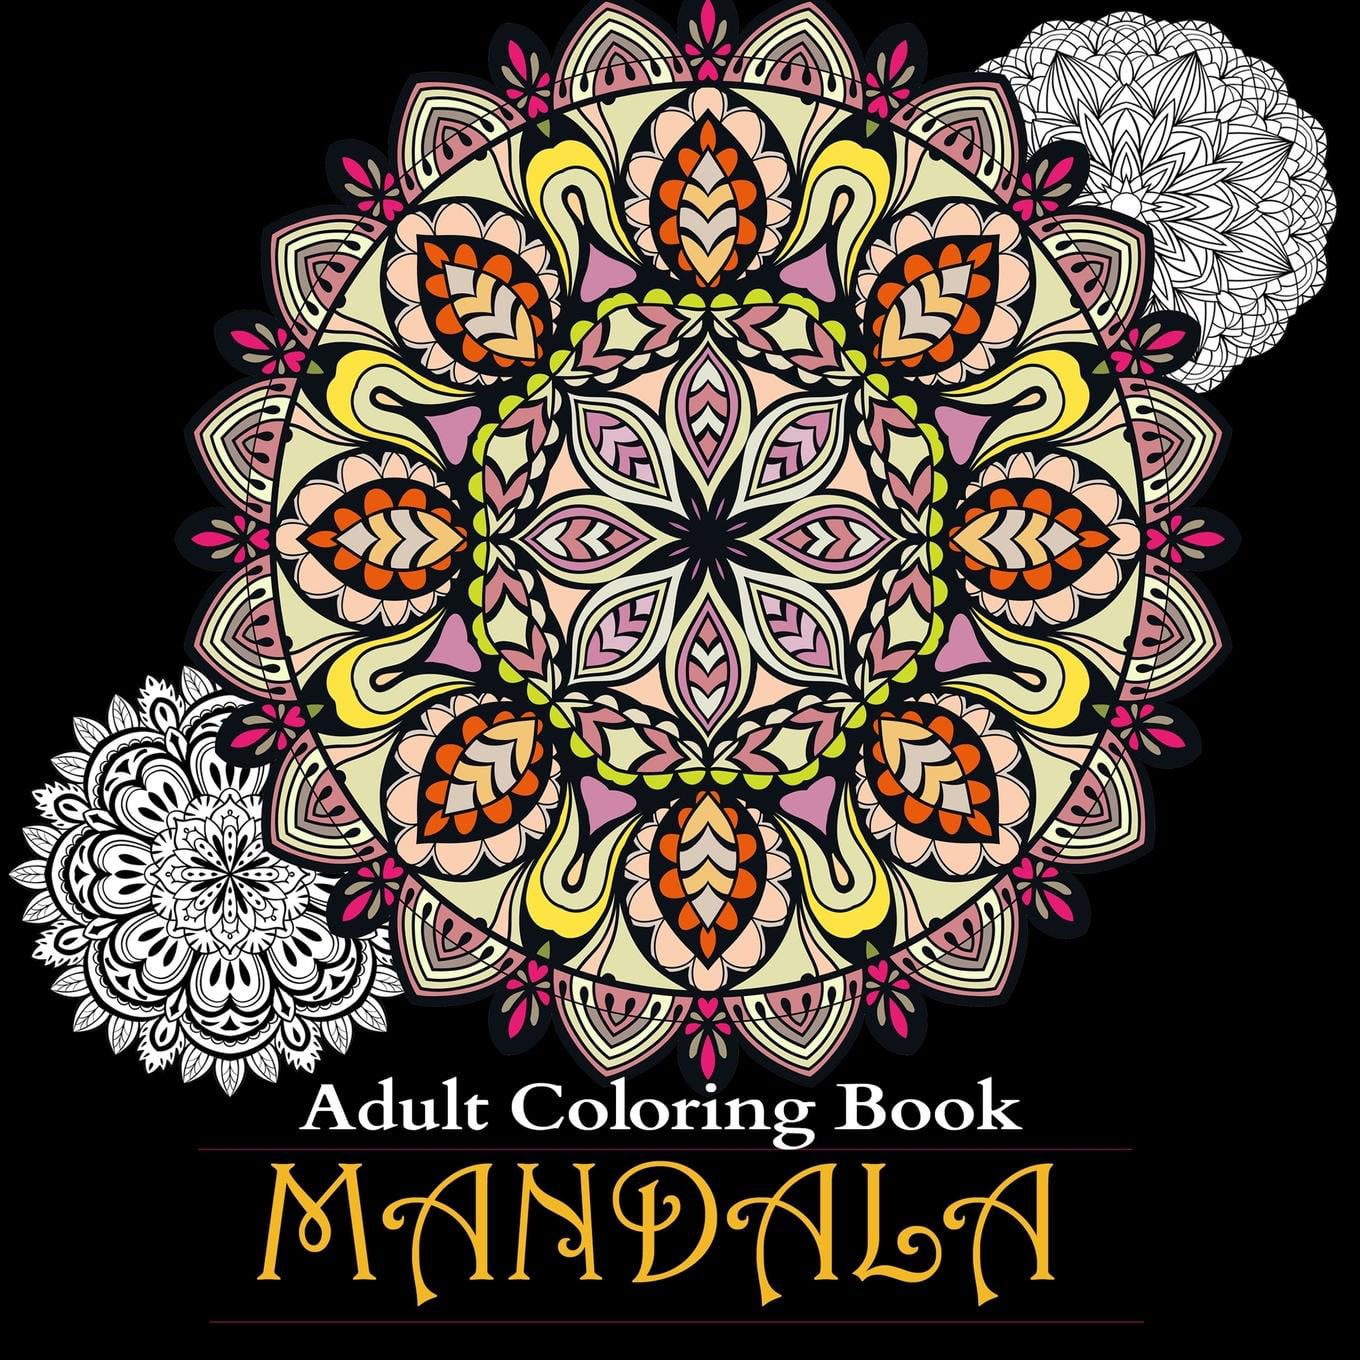 Adult Coloring Books - Walmart.com - Walmart.com